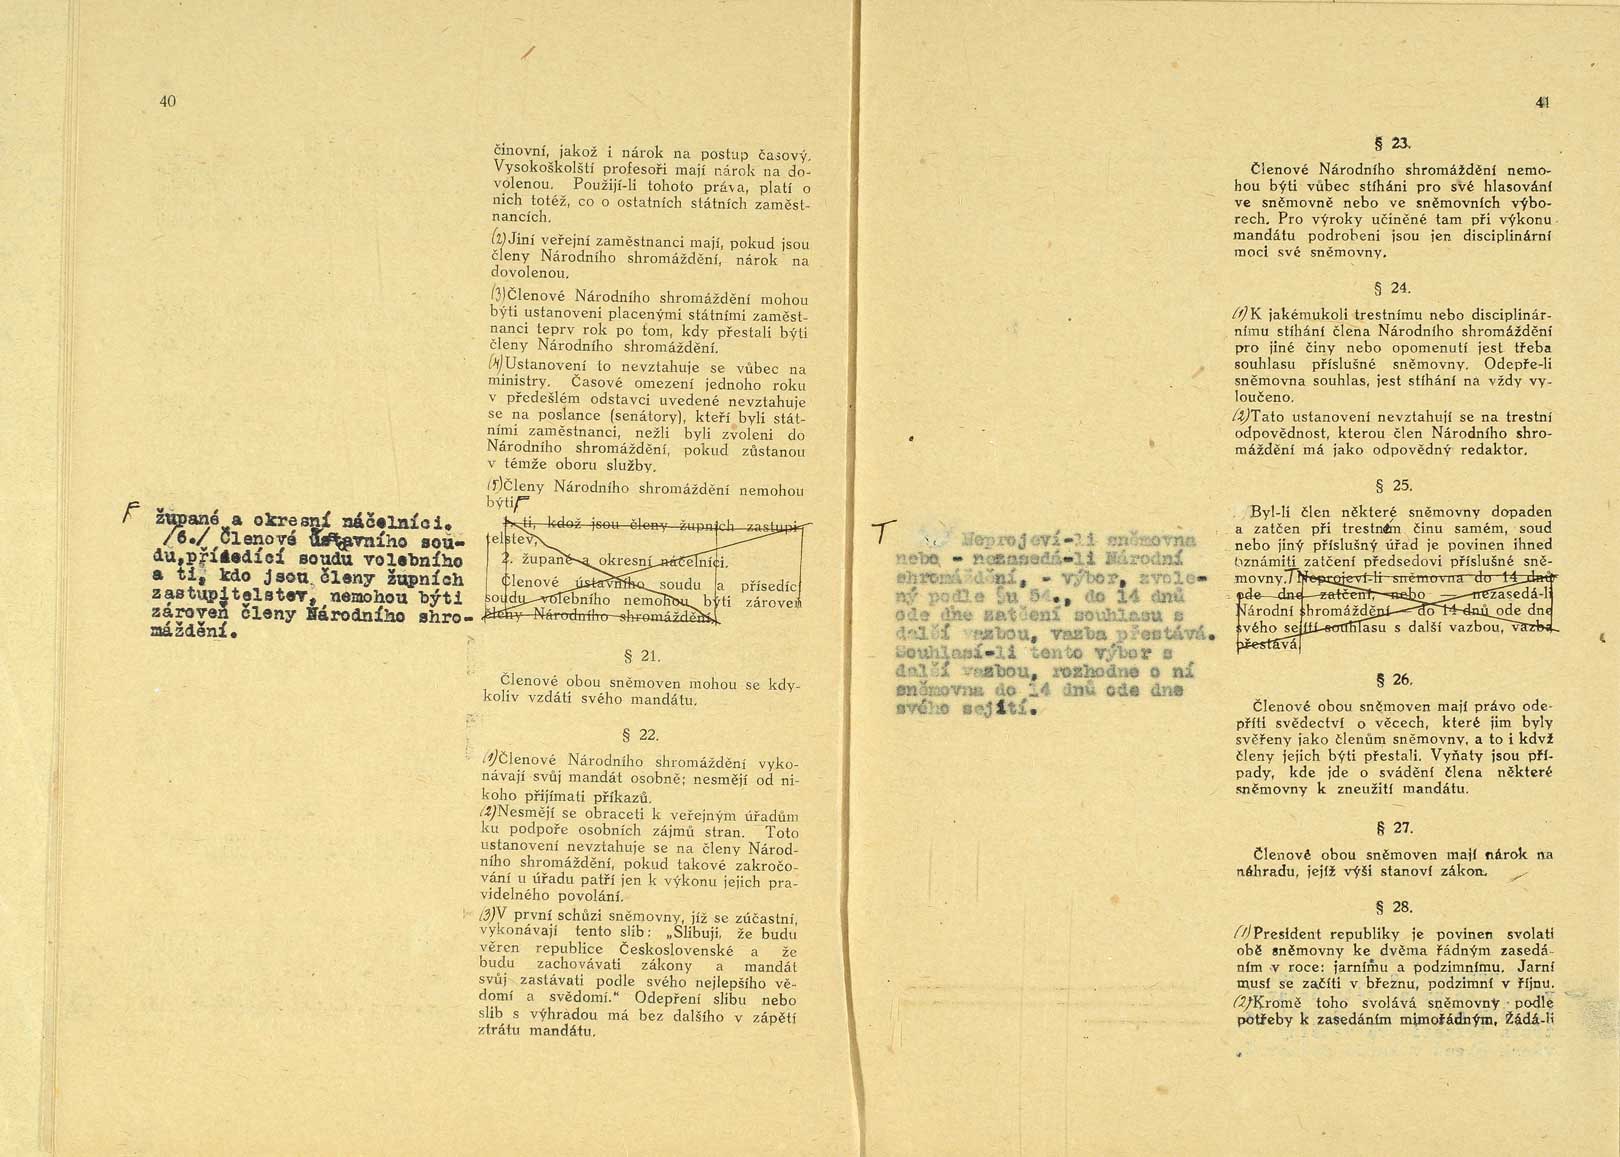 Originál ústavy publikované ve Sbírce zákonů a nařízení pod č. 121, 29. 2. 1920